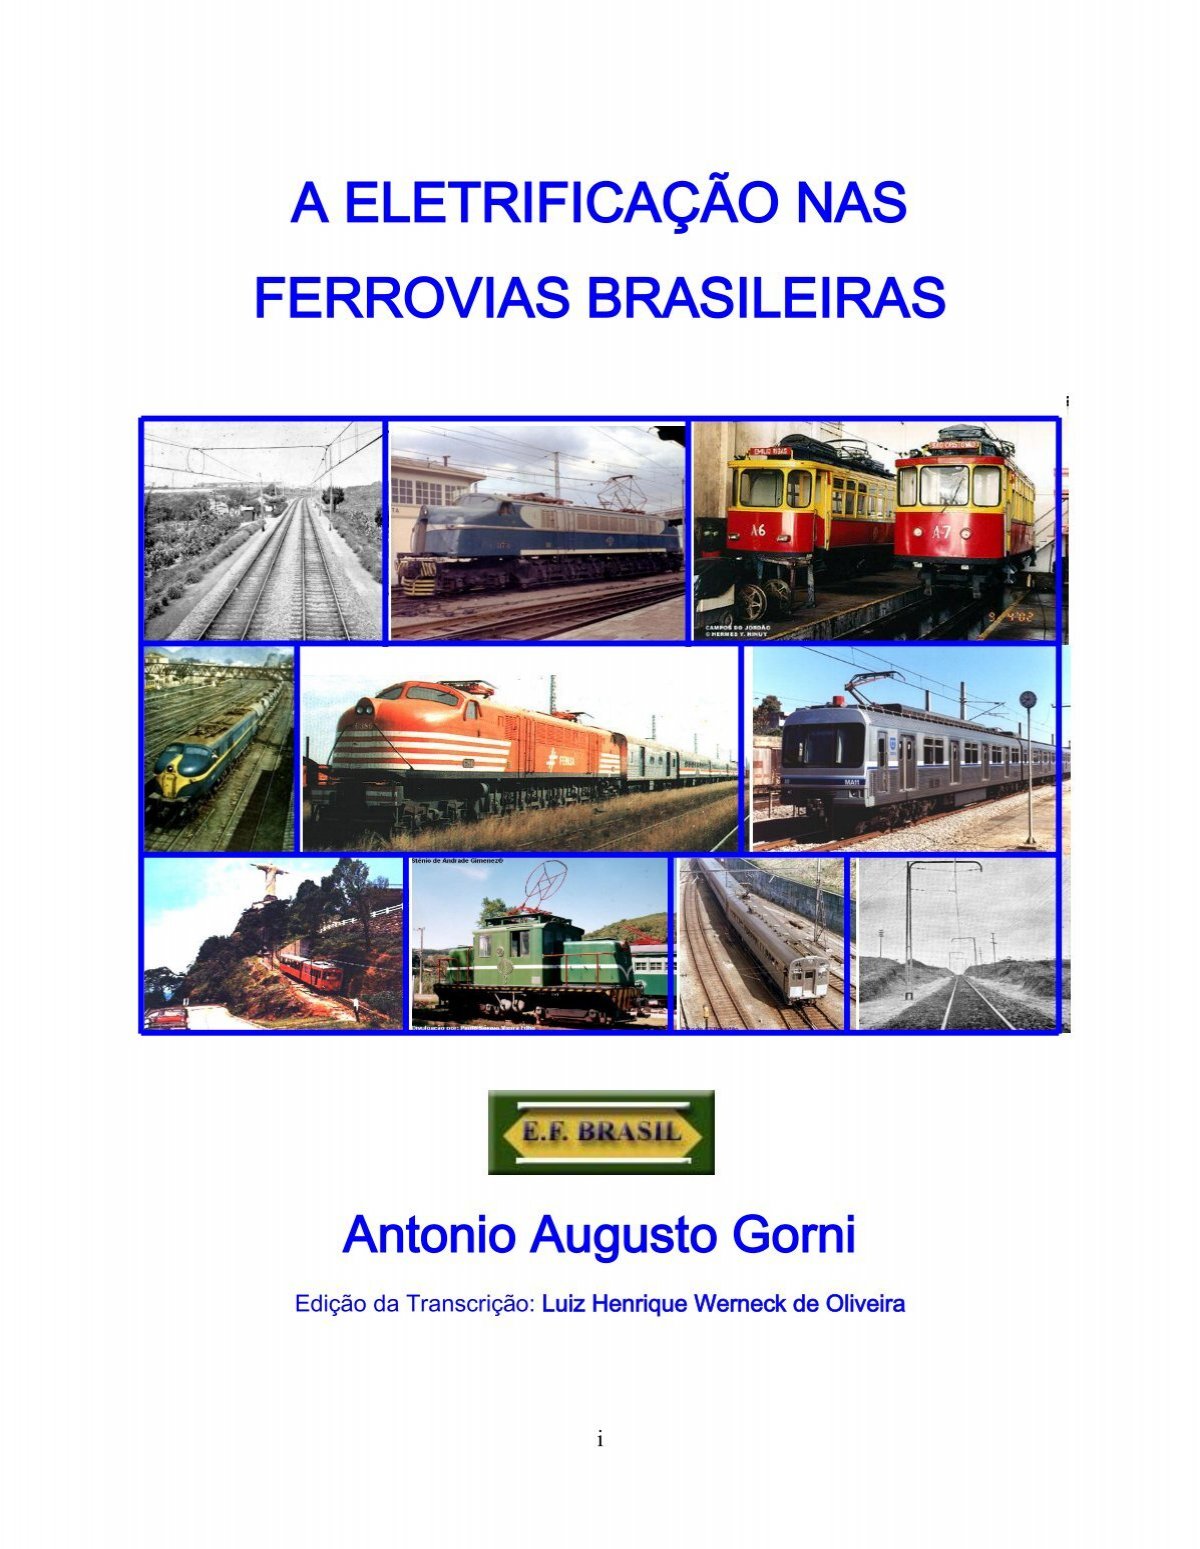 A Eletrificação nas Ferrovias Brasileiras - Antonio Gorni On Line